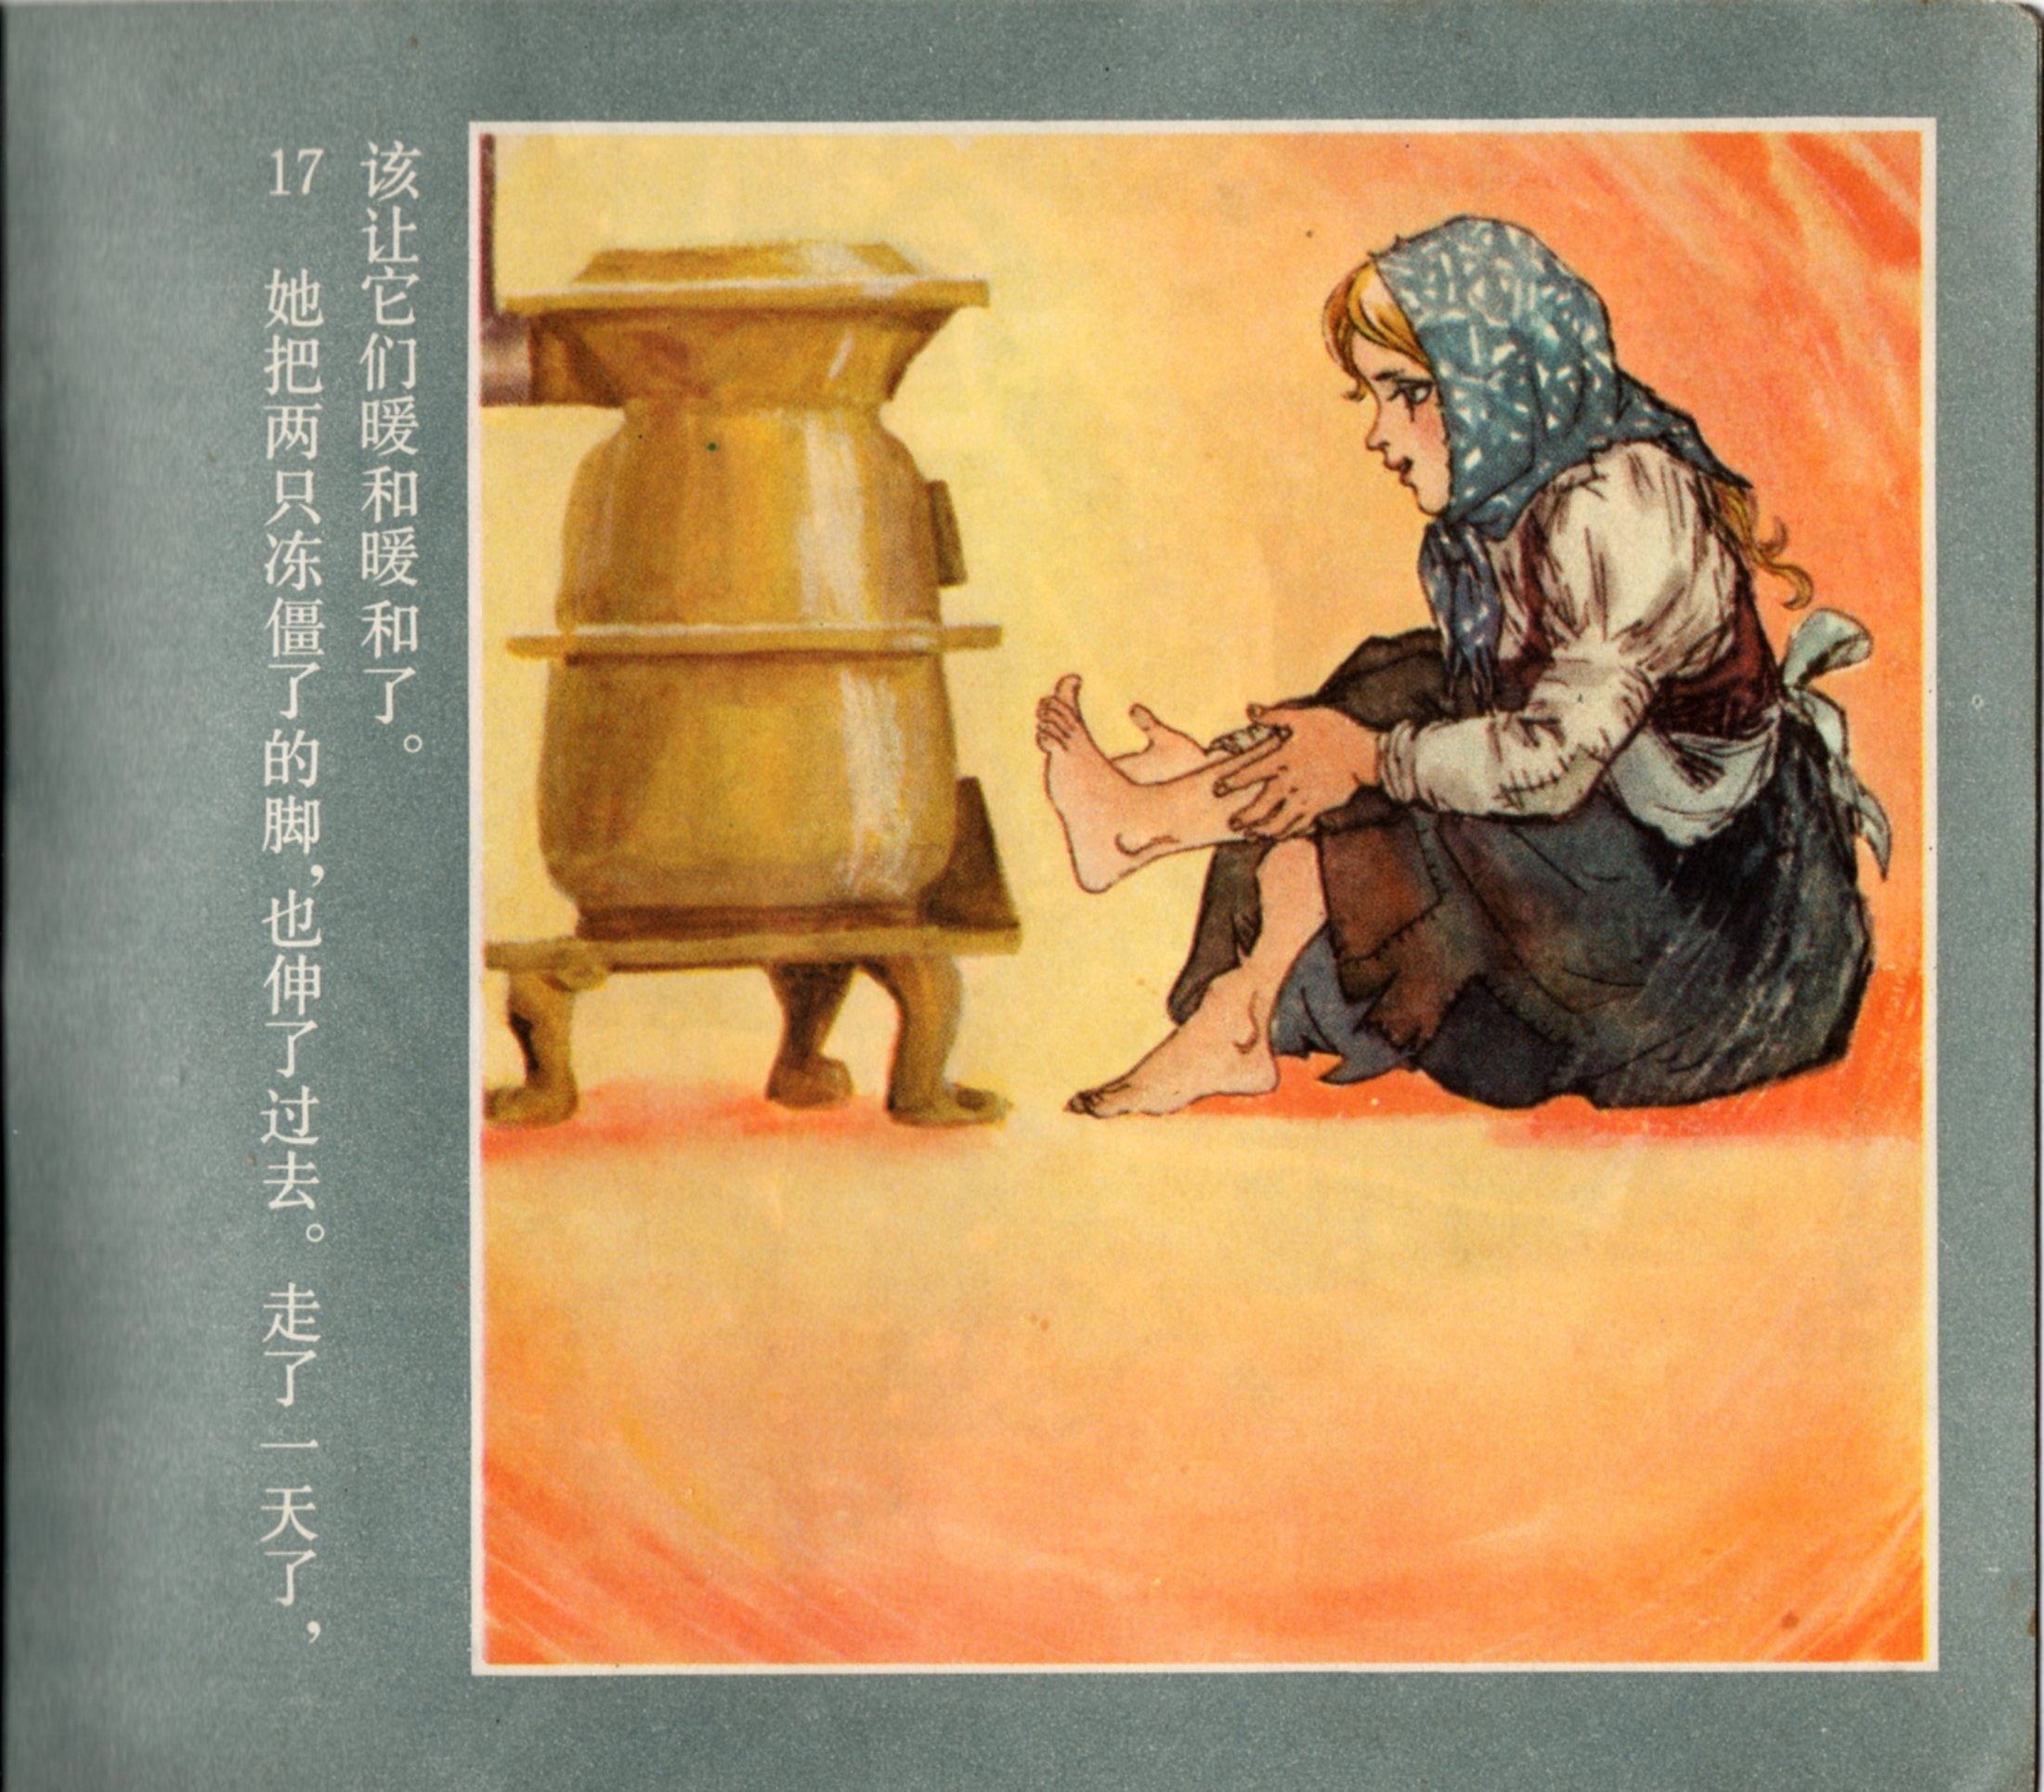 「童年怀旧彩色连环画」卖火柴的小女孩(1978年)